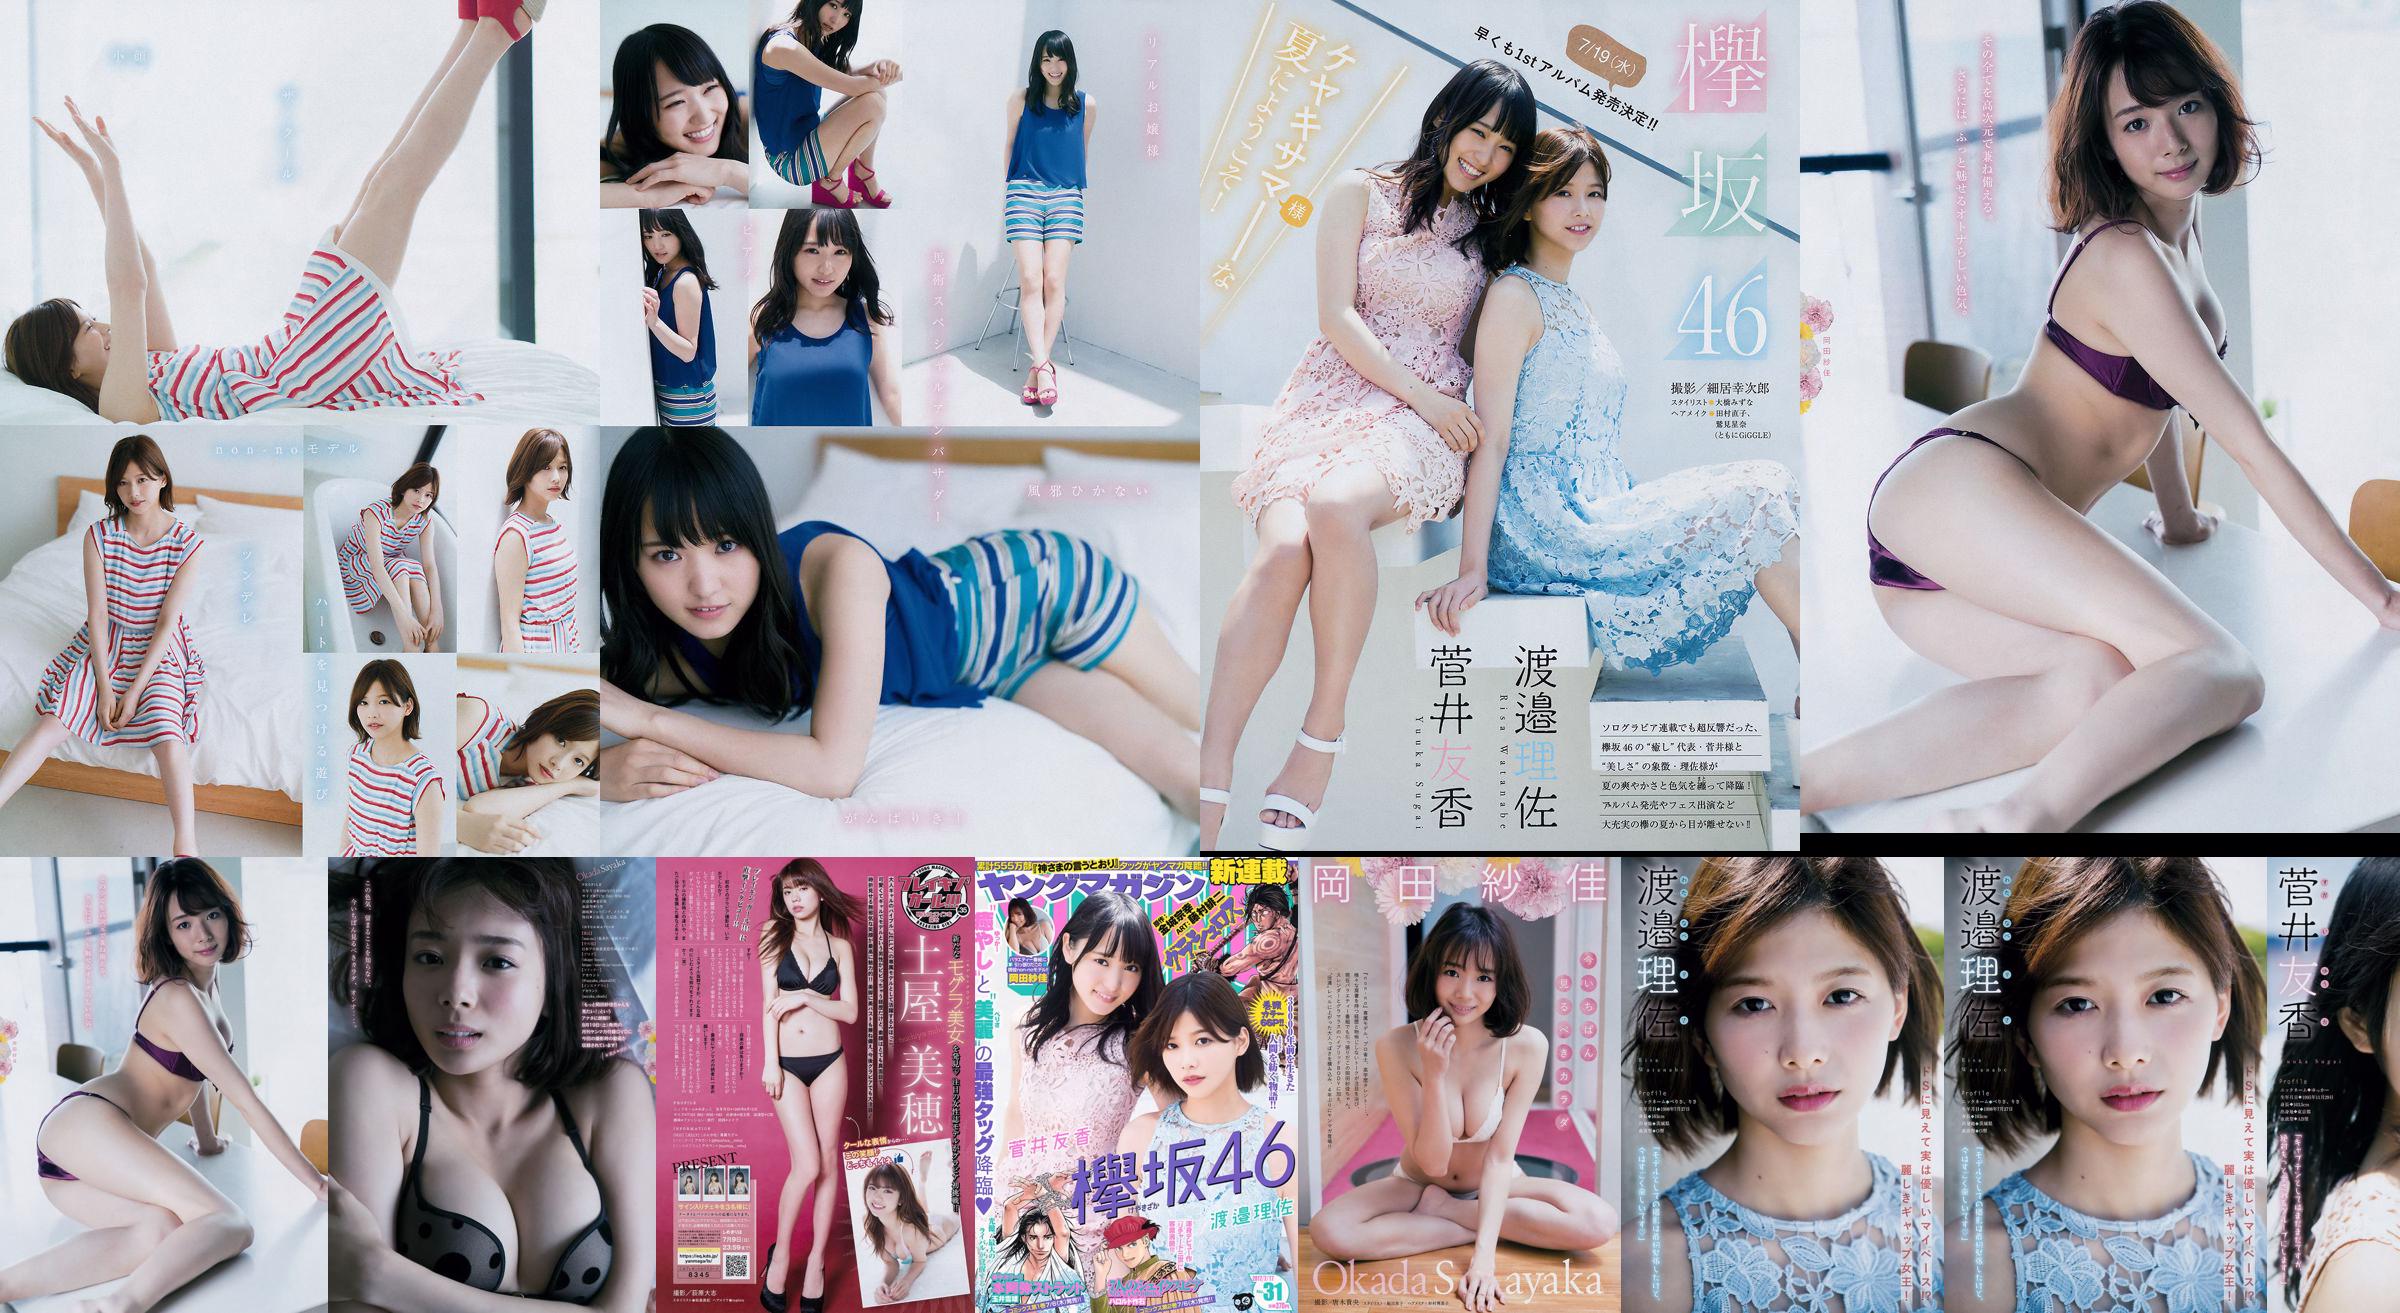 [Young Magazine] Watanabe Risa, Sugai Yuka, Okada Saika 2017 No.31 Photo Magazine No.d90919 Pagina 1